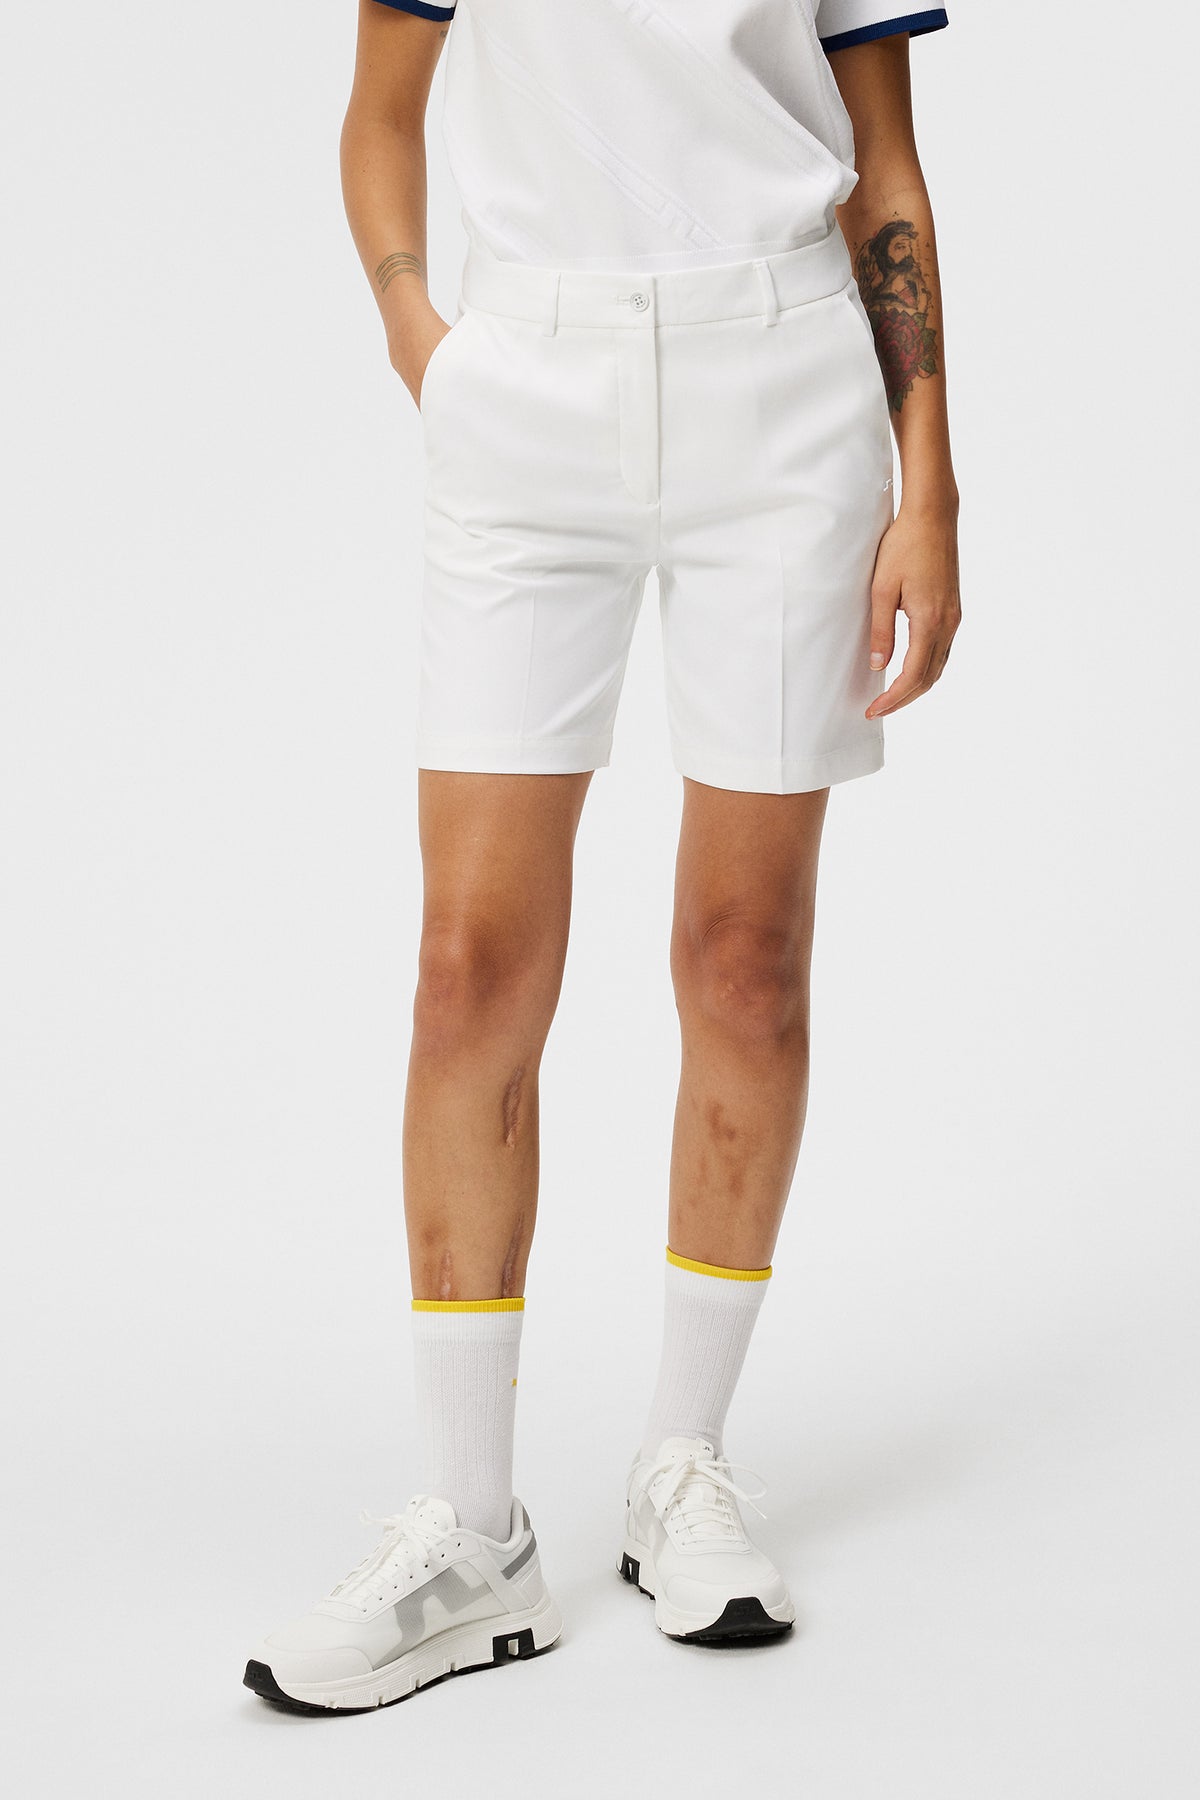 Gwen Long Shorts / White